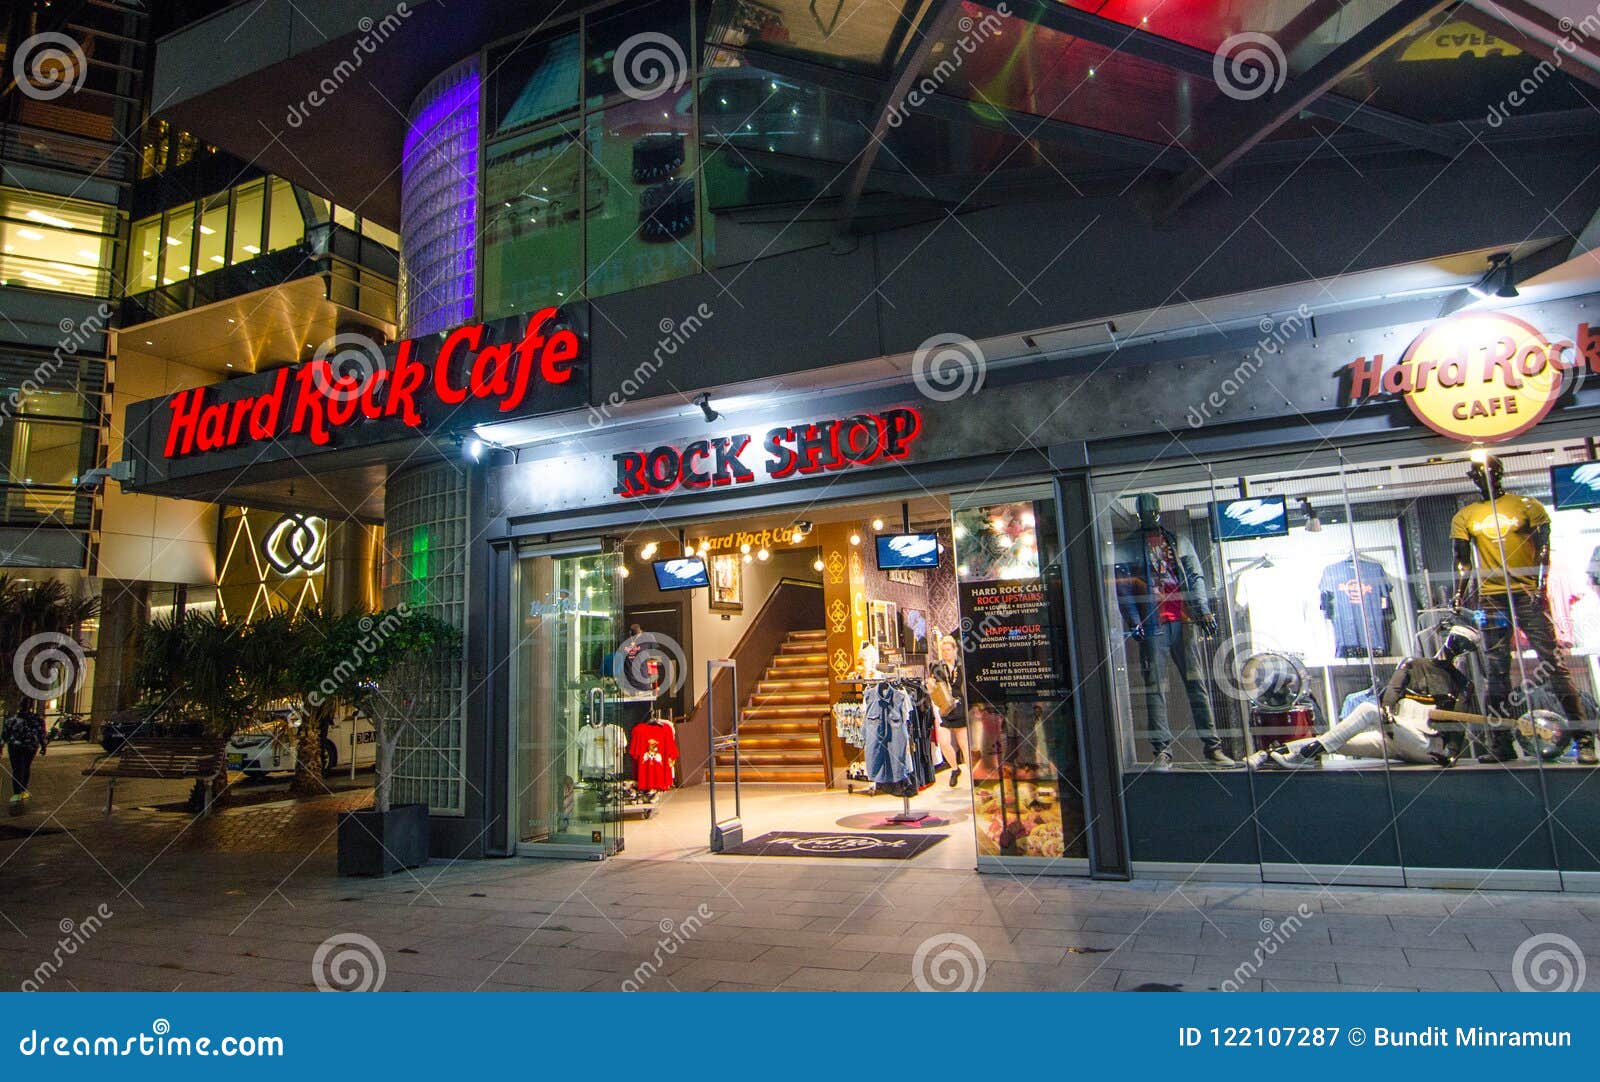 La Ropa De De Rock Cafe Y La Tienda Al Por Menor De Los Accesorios, La Imagen Muestra El Shopfront En Darling S Fotografía - Imagen de moderno,